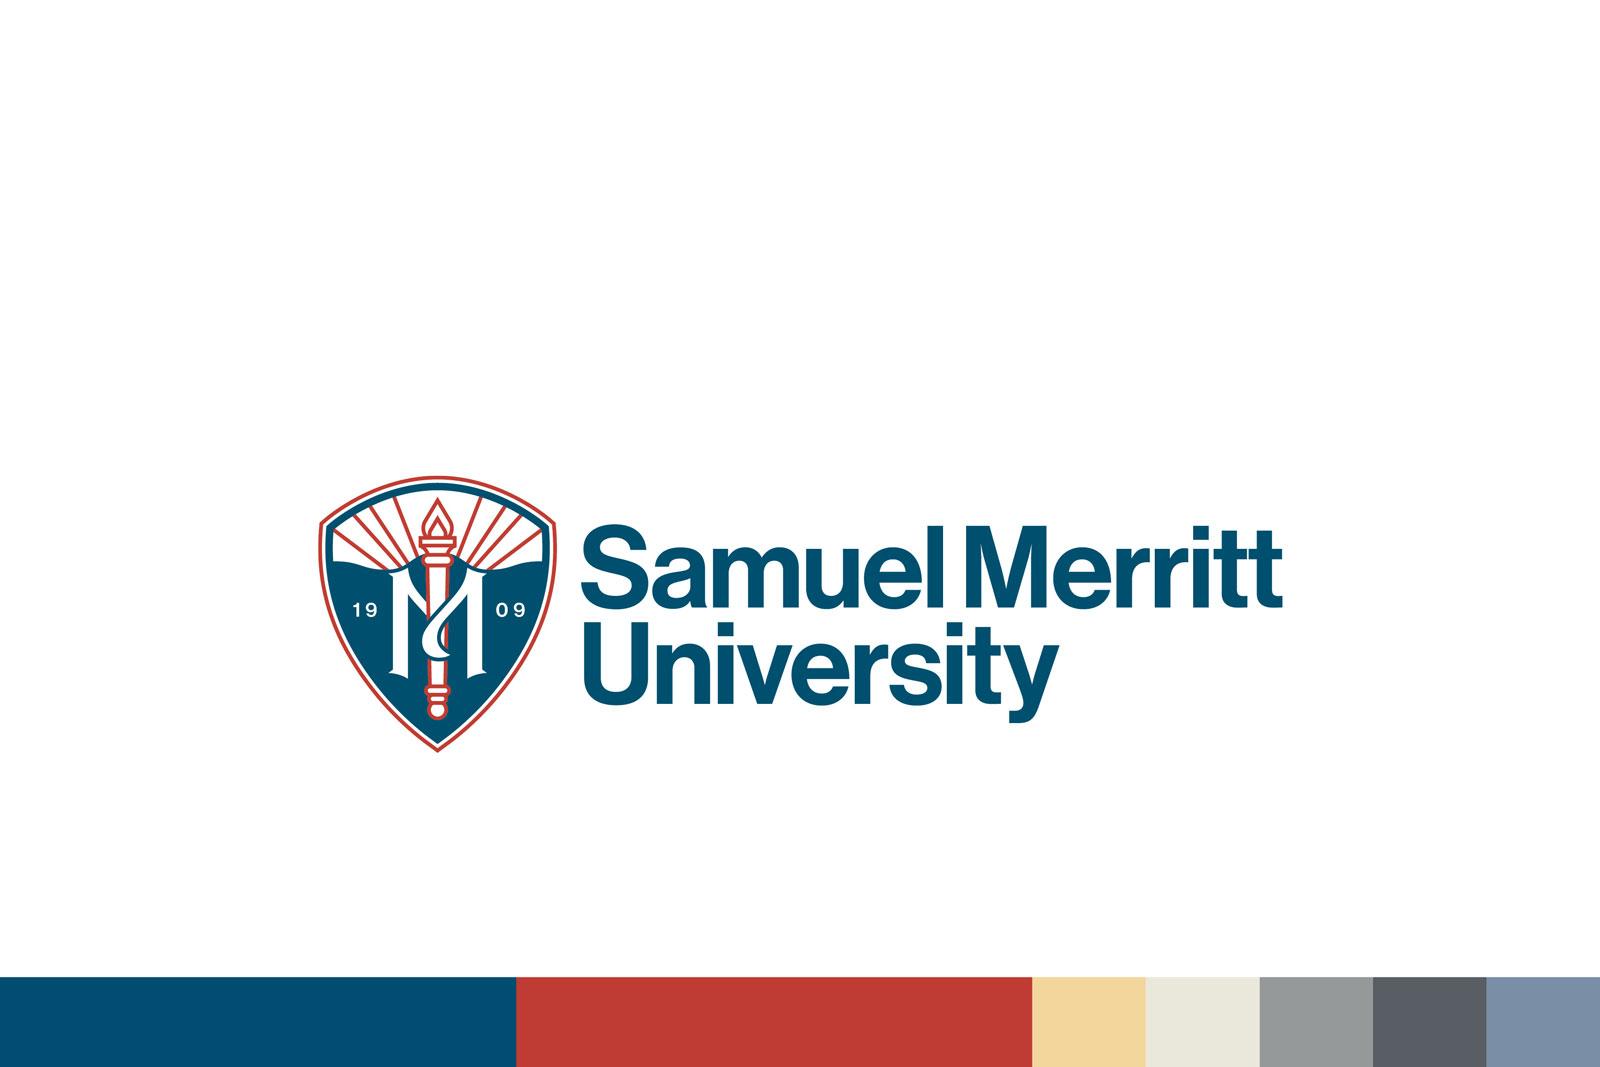 new-logo-ushers-in-new-era-samuel-merritt-university